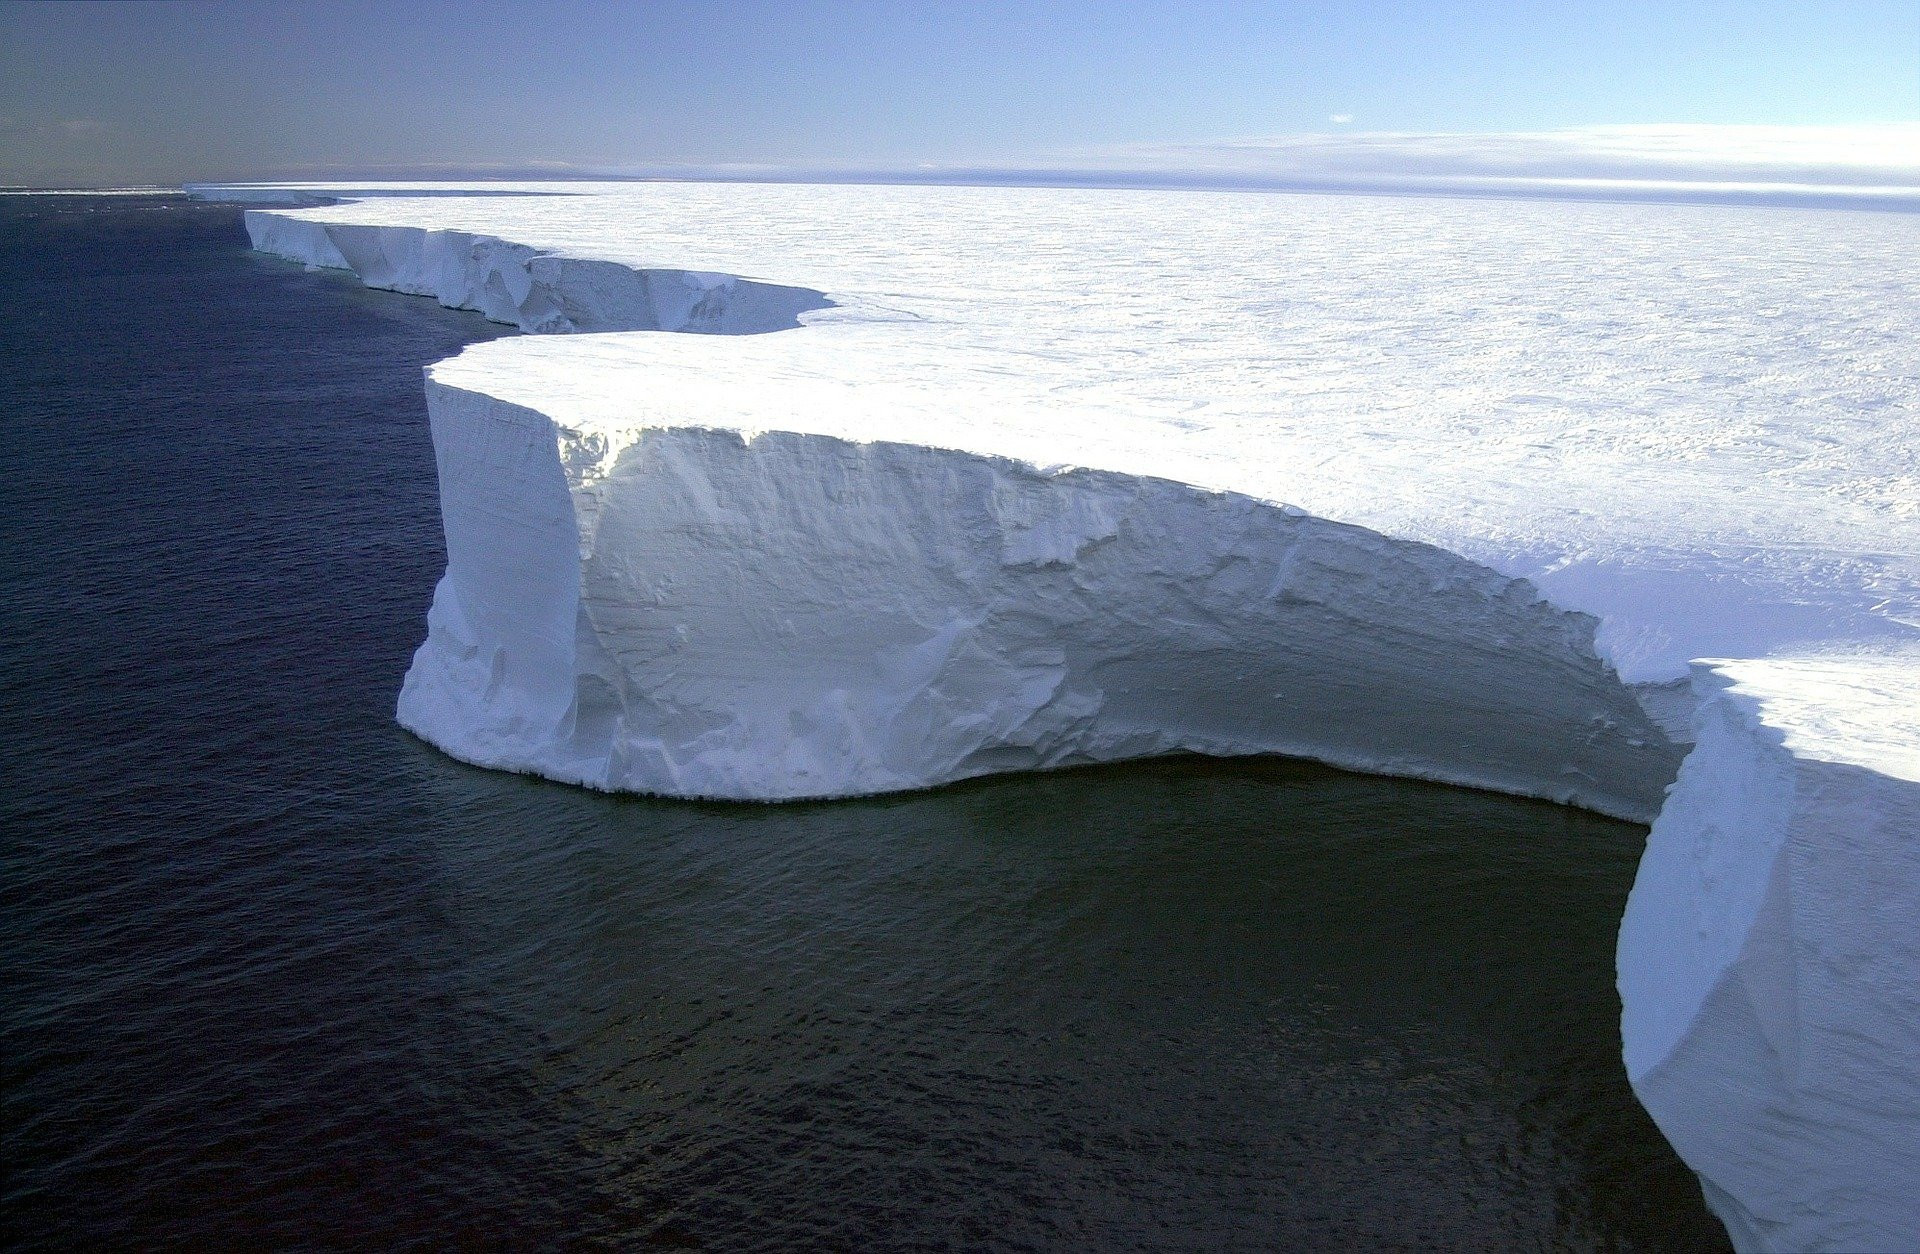 Ein große weiße Eisfläche ragt aus dem dunklen Meer